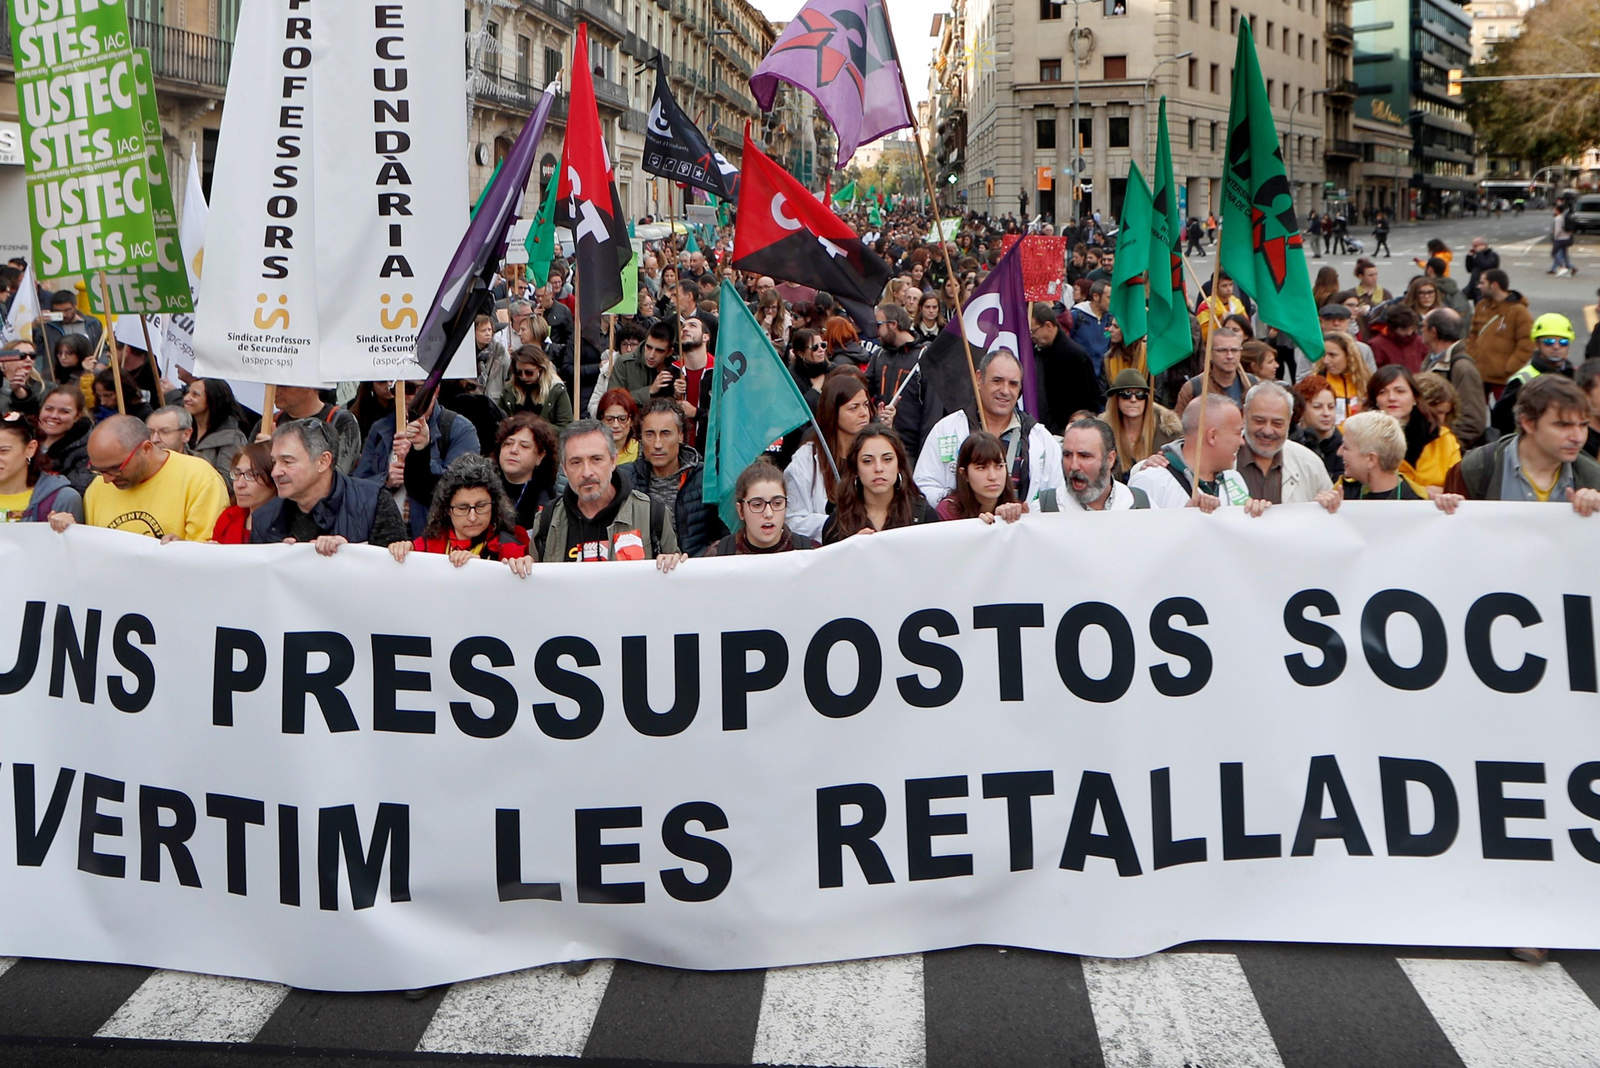 Vive Cataluña jornada de protestas por recortes públicos. Noticias en tiempo real